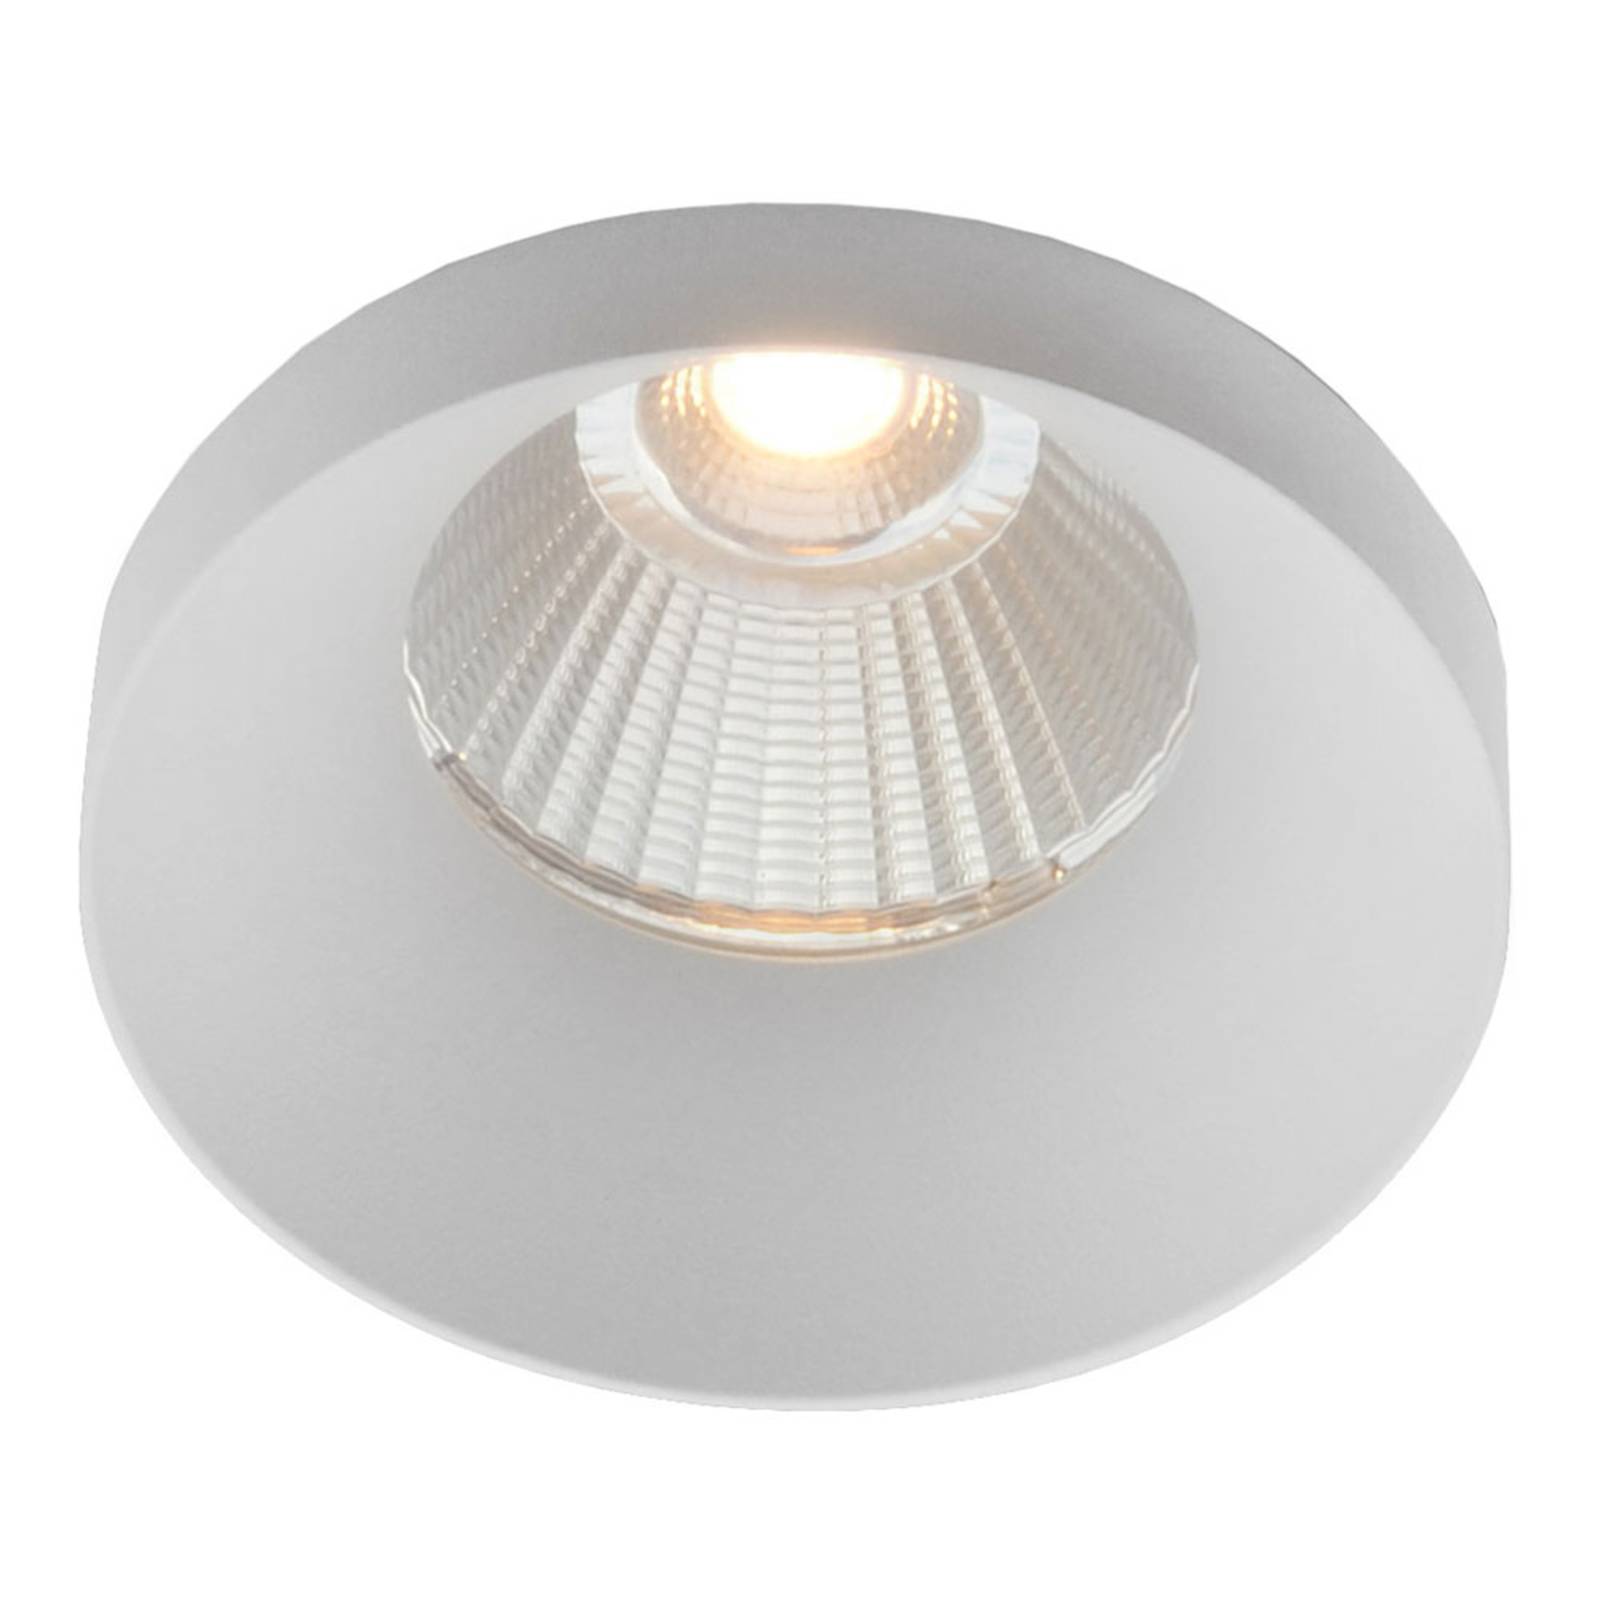 The Light Group GF design Owi vestavné svítidlo IP54 bílé 3 000 K